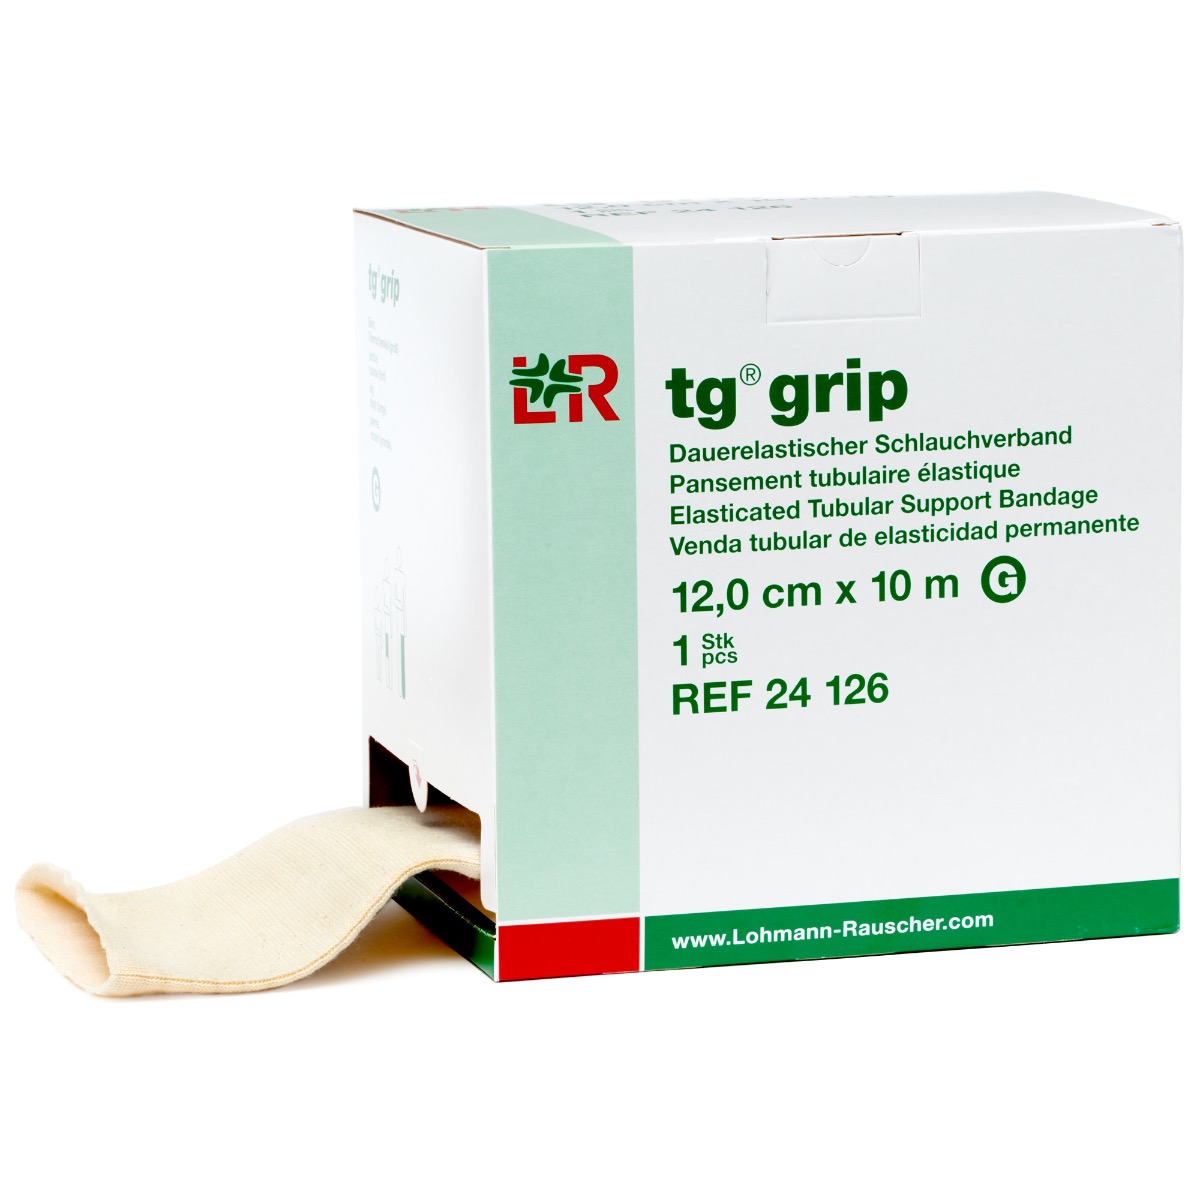 tg grip Elasticated Tubular Support Bandage--